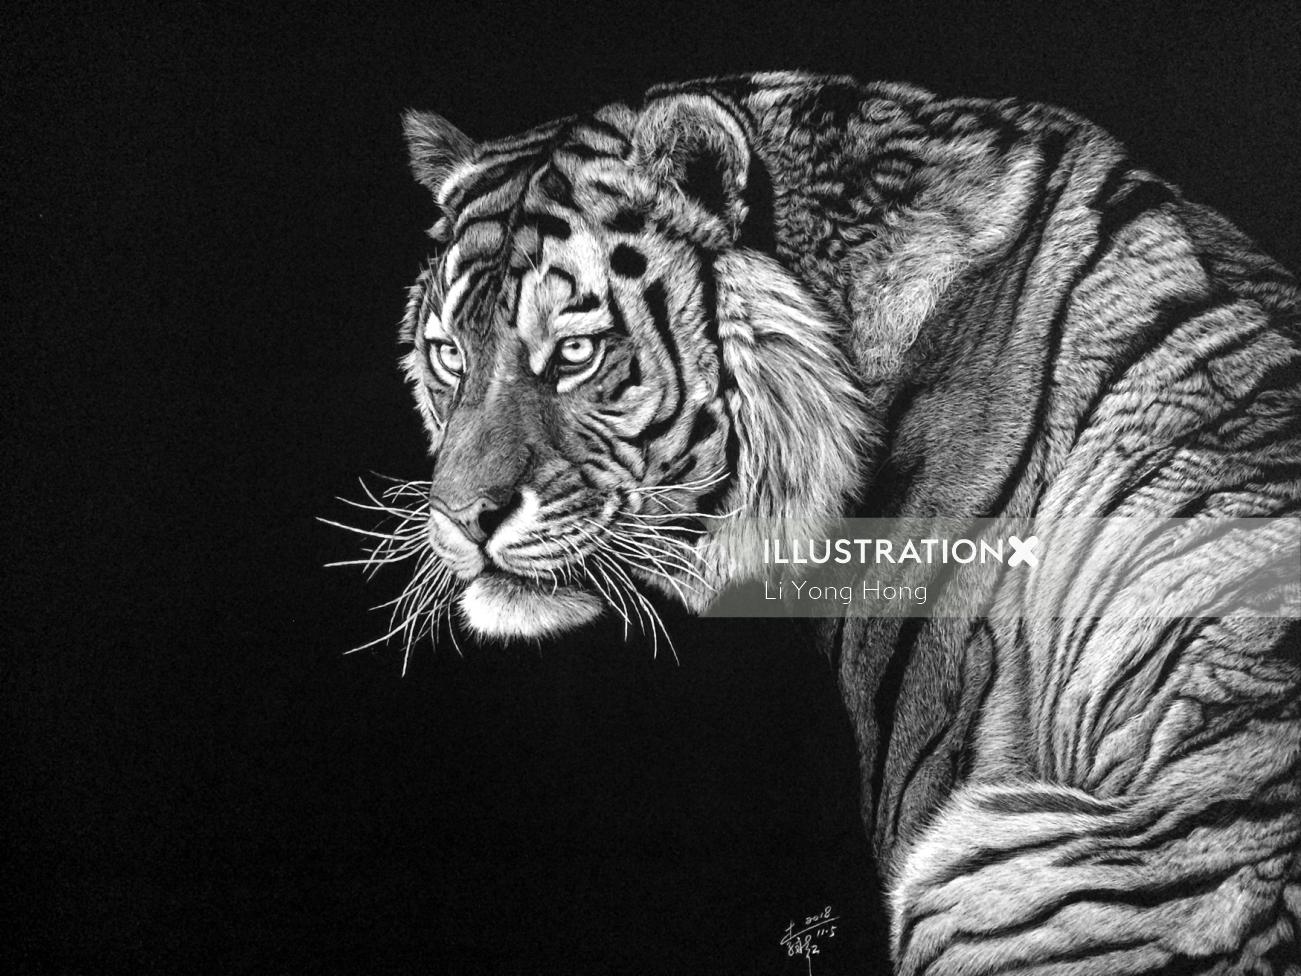 Retrato preto e branco de tigre